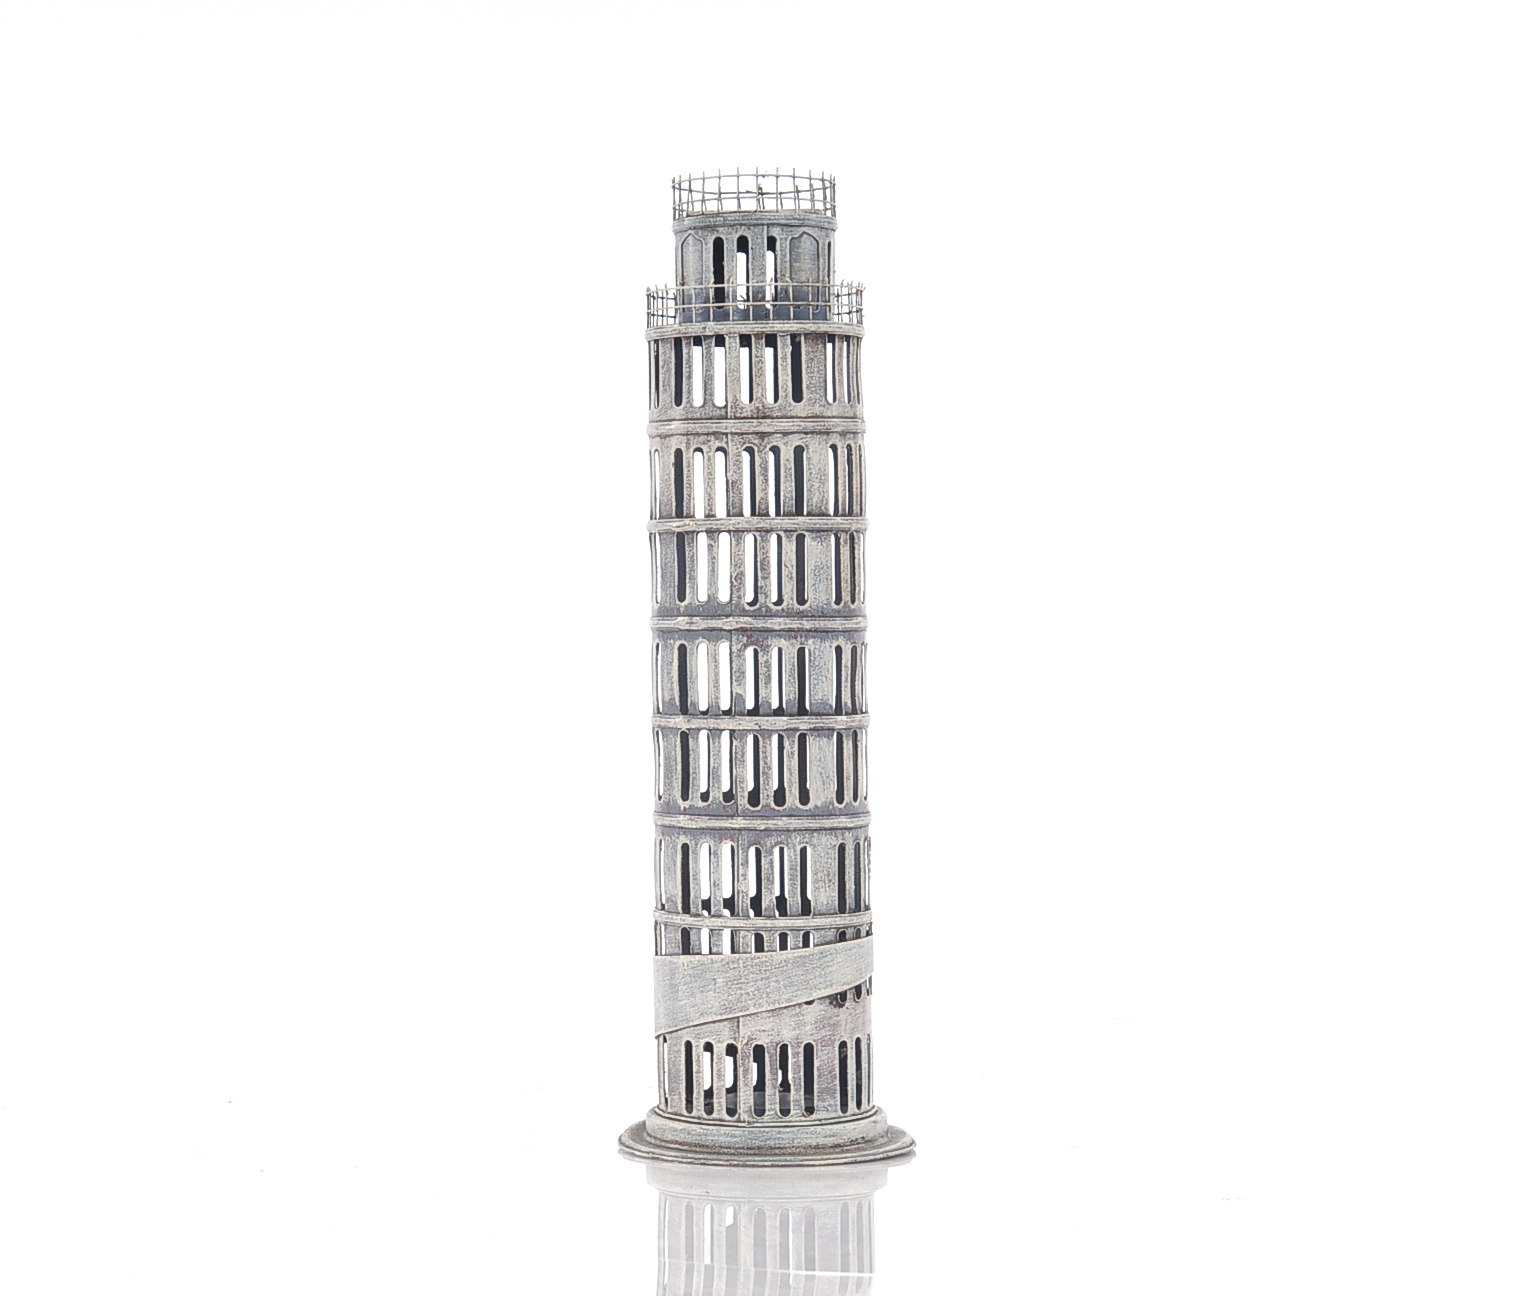 4" x 4" x 12.5" Pisa Tower Saving Box